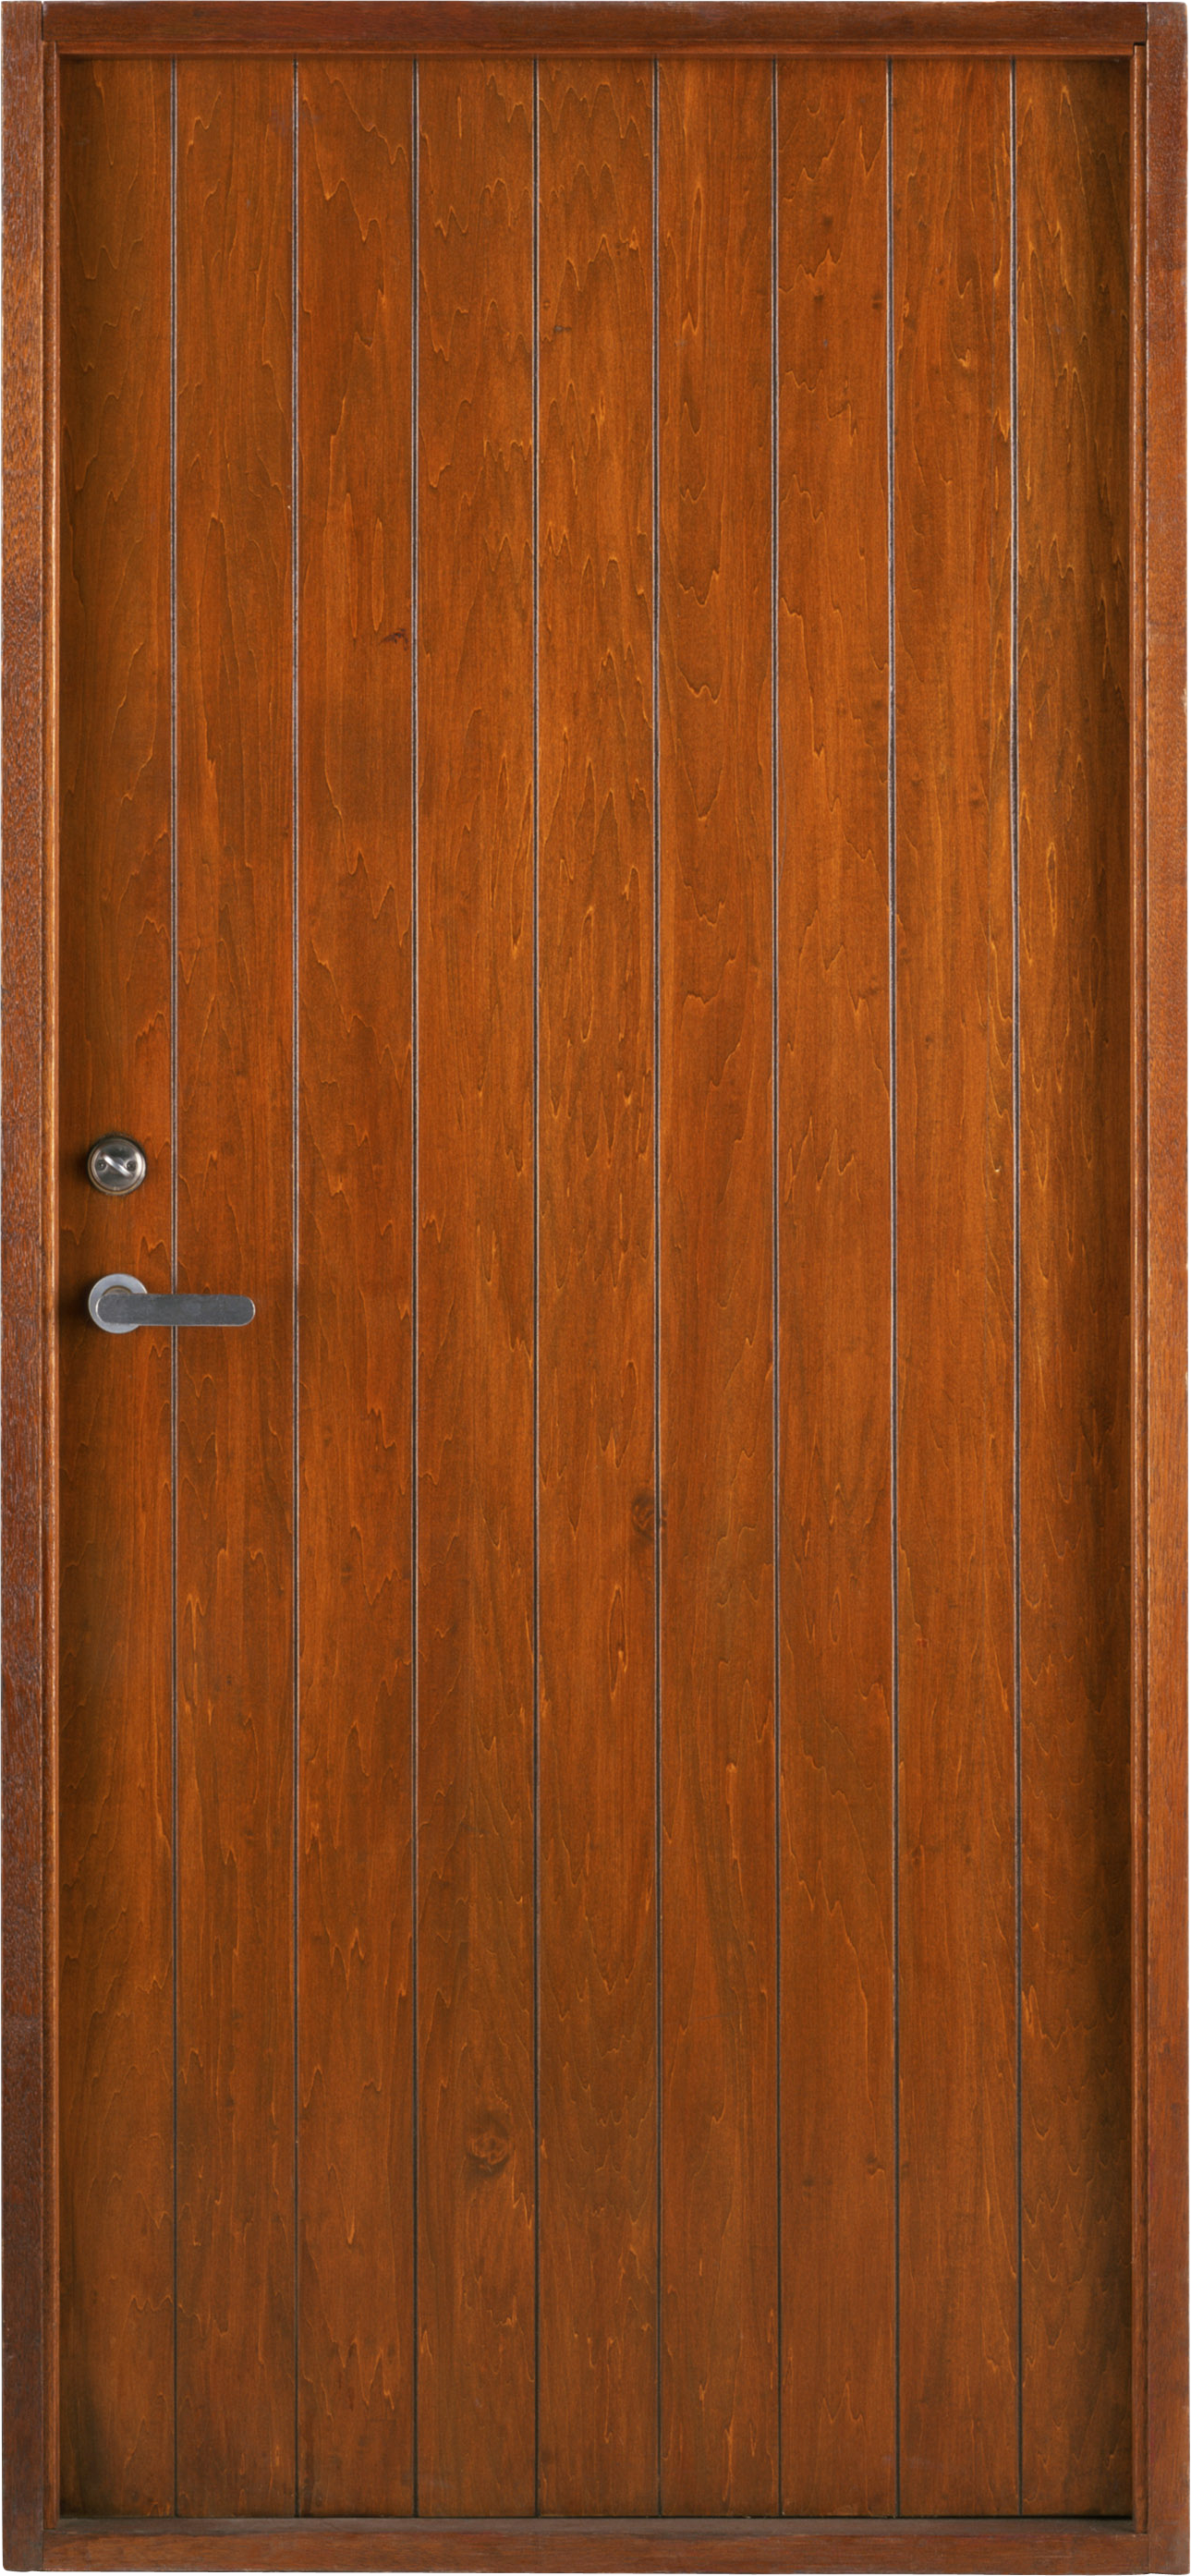 Exterior Wooden Door Transparent Image